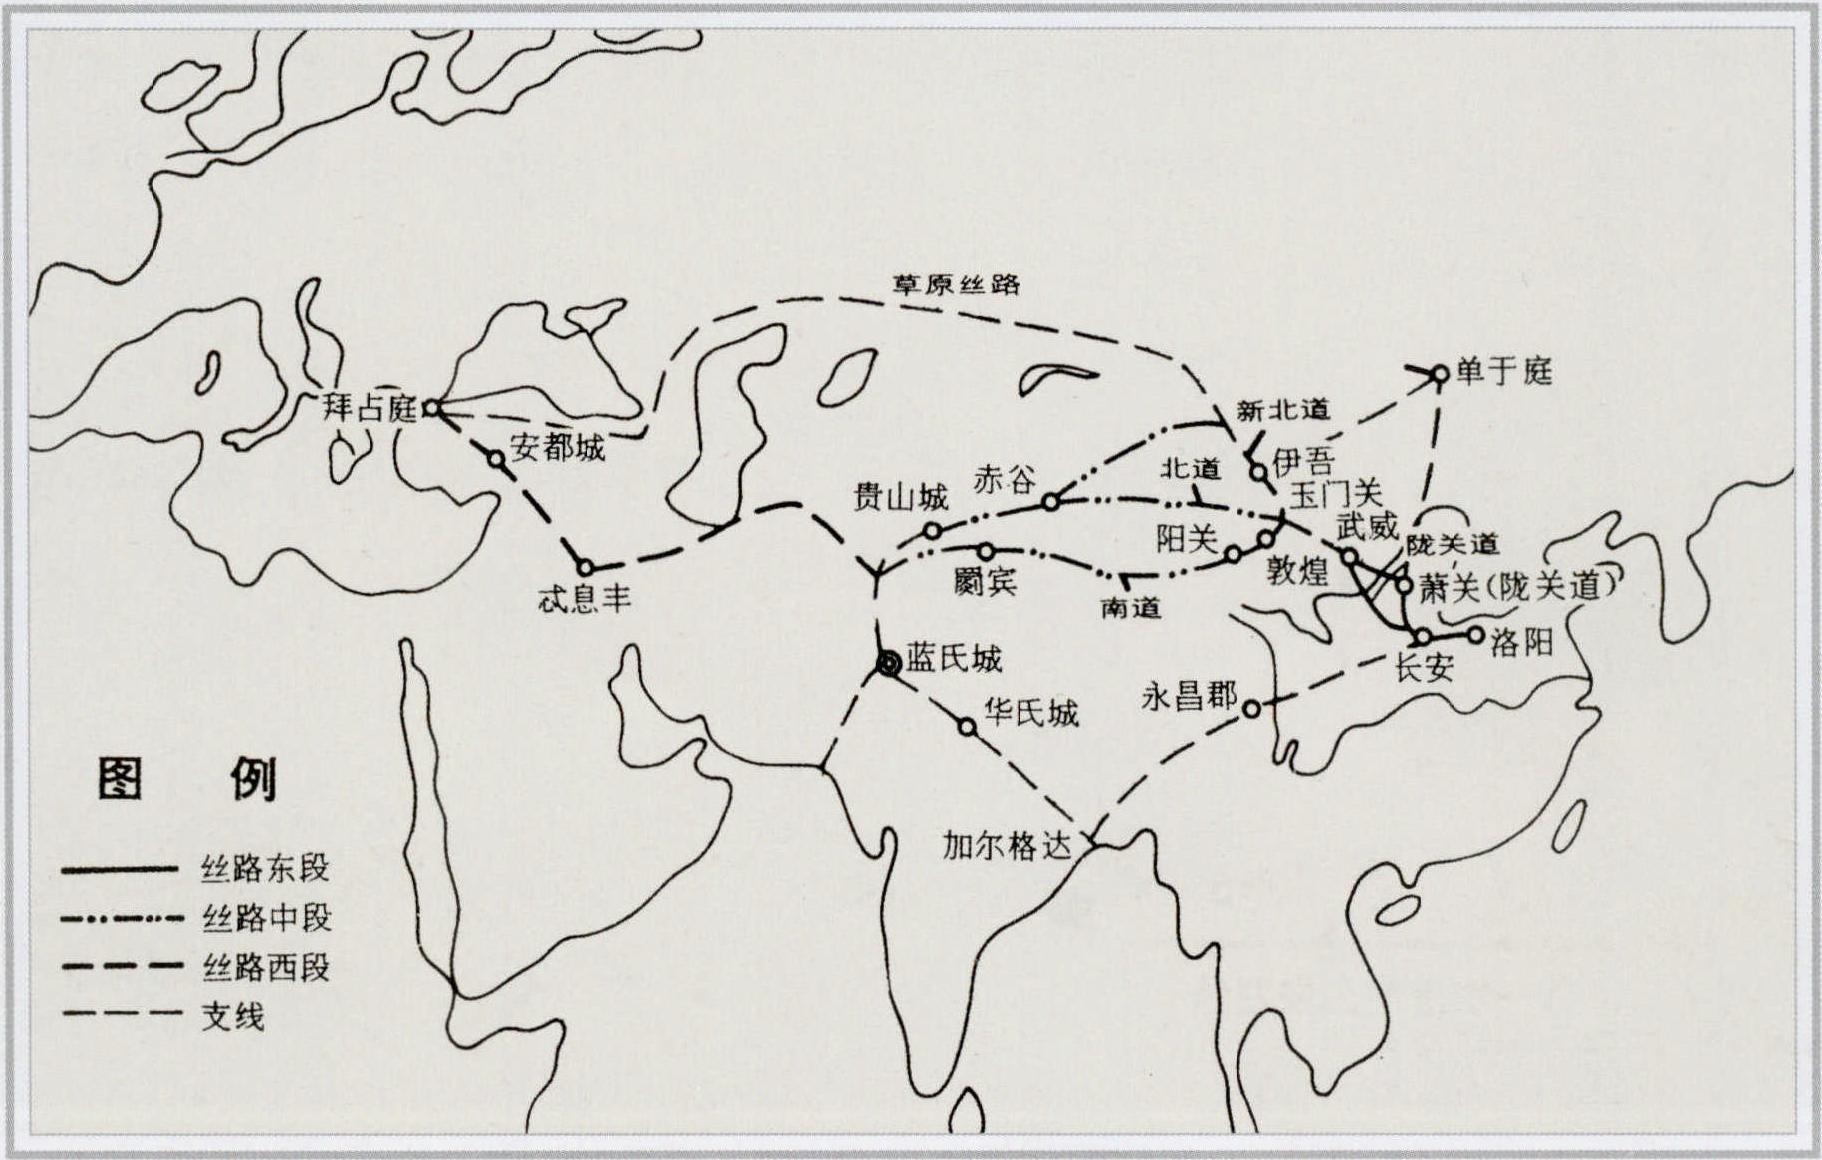 汉代丝绸之路主要线路示意图